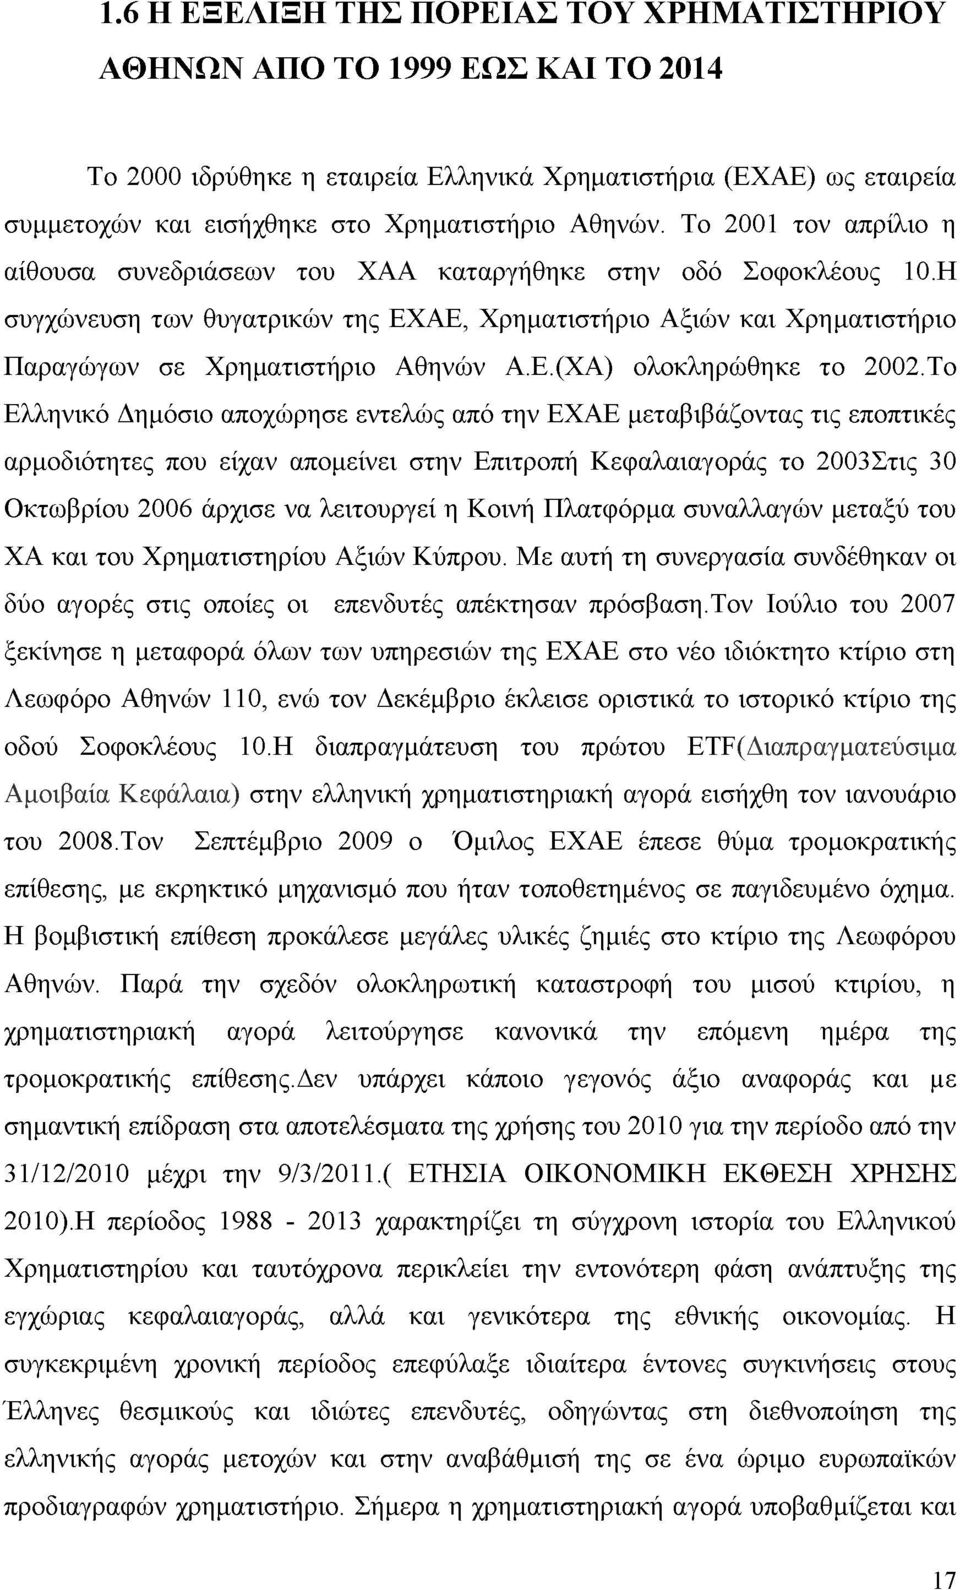 Το Ελληνικό Δημόσιο αποχώρησε εντελώς από την ΕΧΑΕ μεταβιβάζοντας τις εποπτικές αρμοδιότητες που είχαν απομείνει στην Επιτροπή Κεφαλαιαγοράς το 2003Στις 30 Οκτωβρίου 2006 άρχισε να λειτουργεί η Κοινή